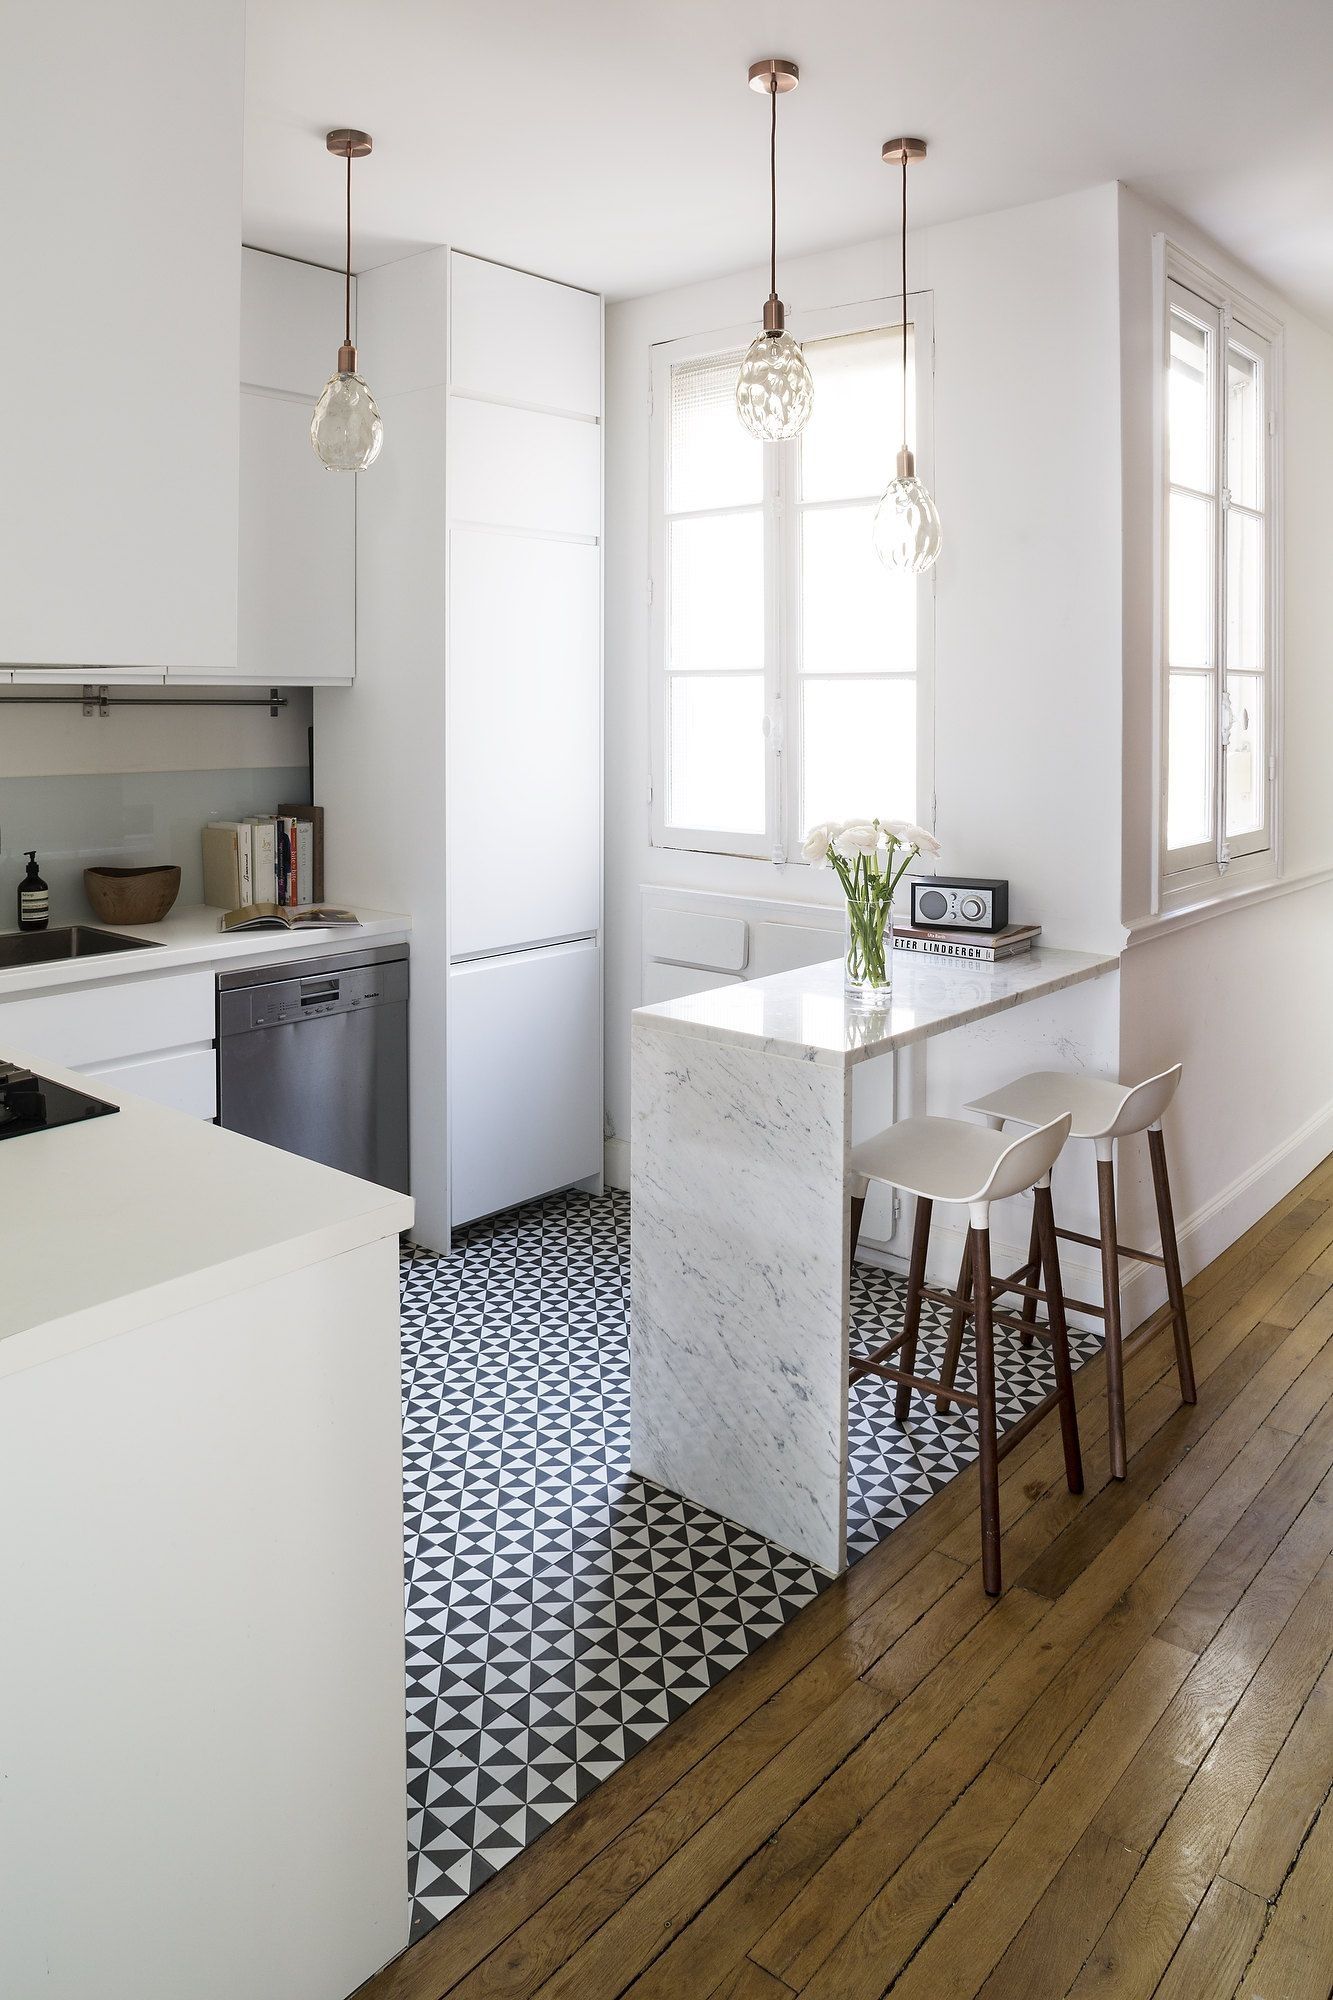 12 thiết kế bếp nhỏ đầy ấn tượng và thông minh dành cho các căn chung cư có diện tích hẹp - Ảnh 6.